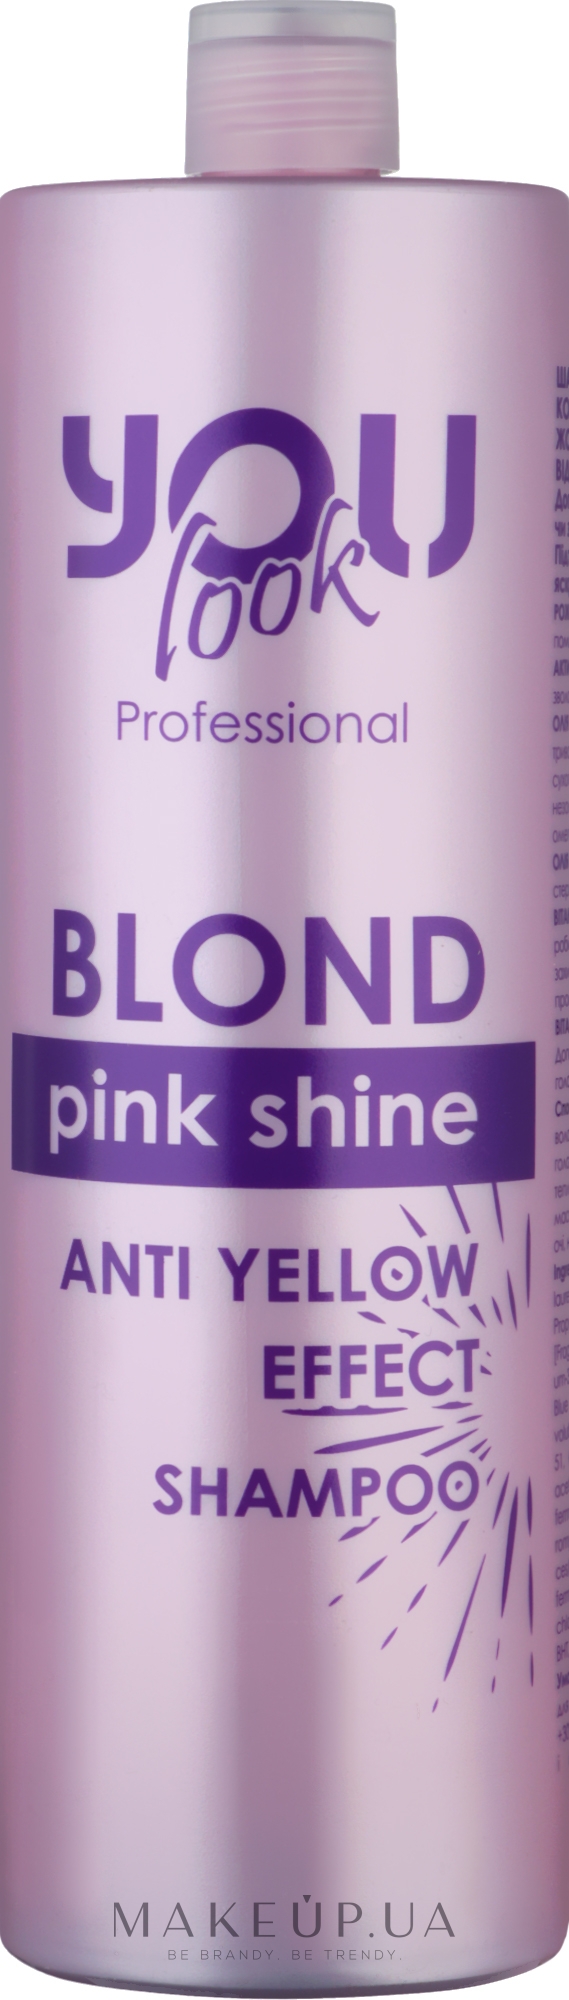 Шампунь для сохранения цвета и нейтрализации желто-оранжевых оттенков - You look Professional Pink Shine Shampoo — фото 1000ml